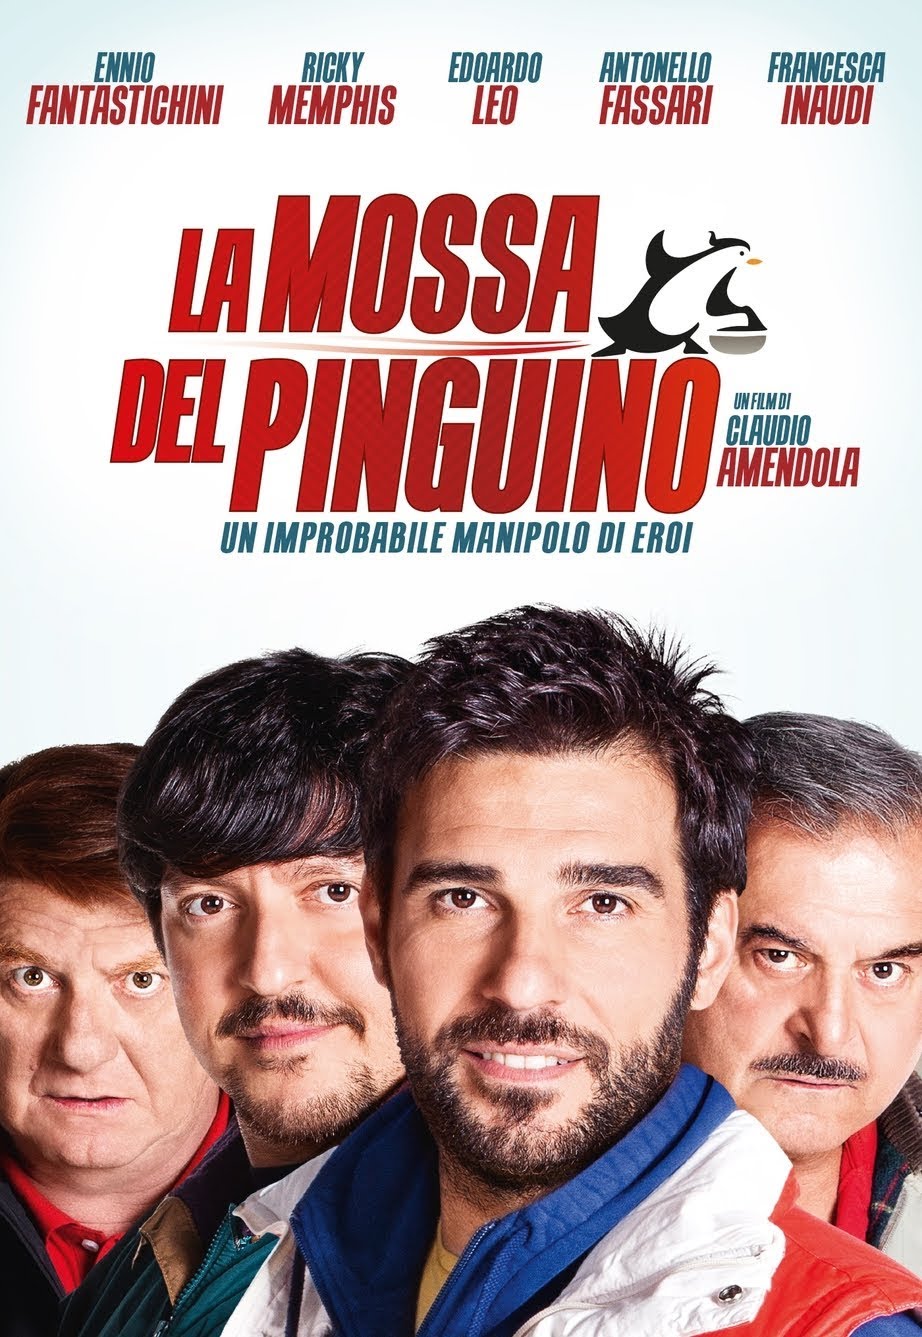 La mossa del pinguino [HD] (2014)